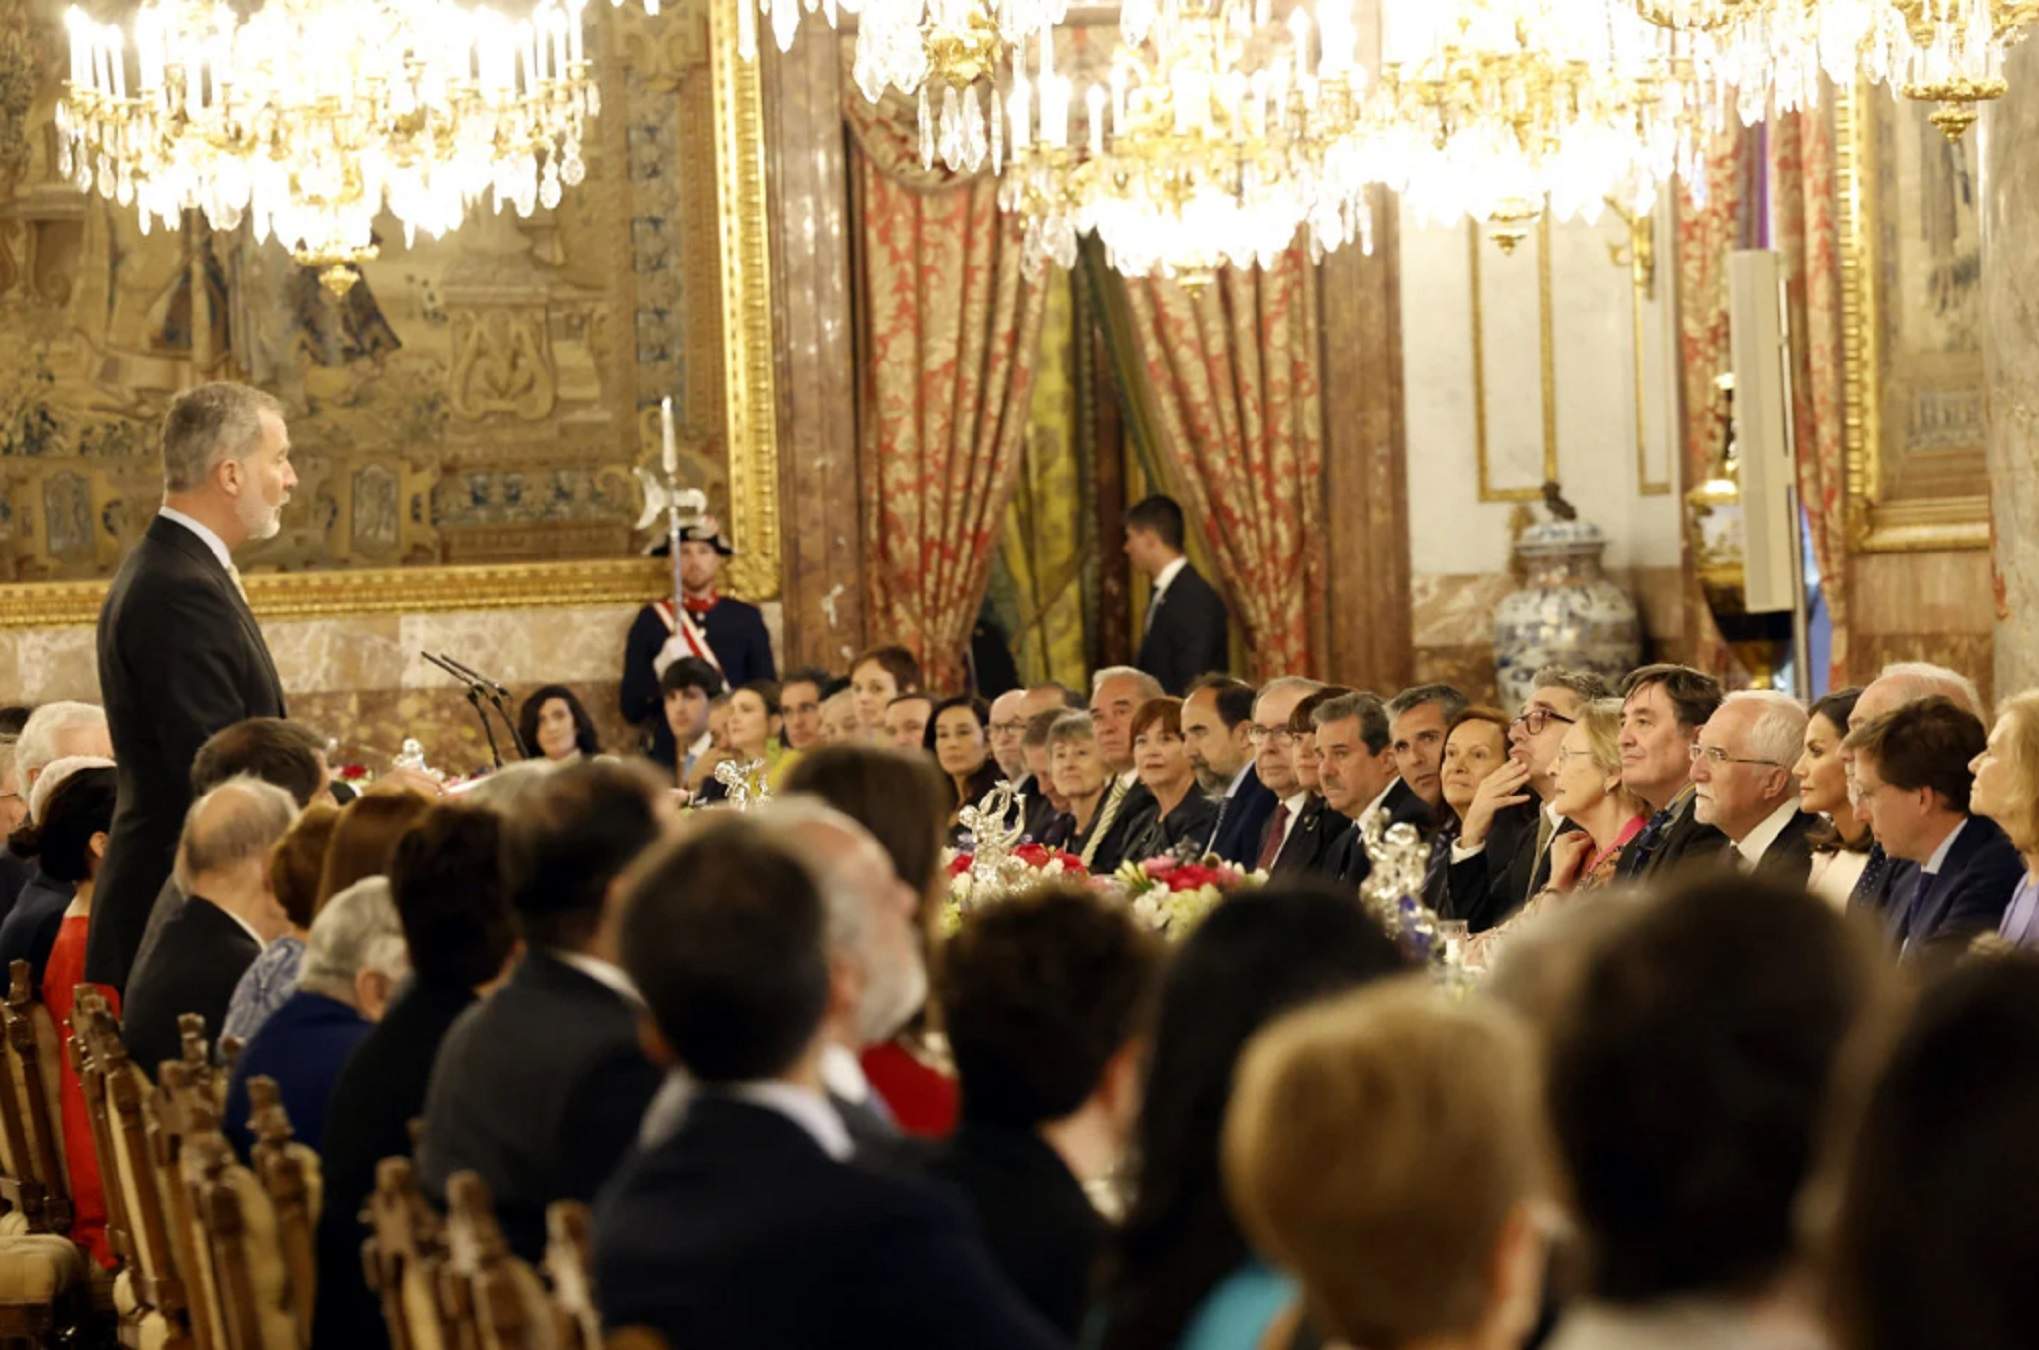 Lliçó d'un convidat de Felip en un sopar al Palau Reial: bufetada a un costum molt espanyol